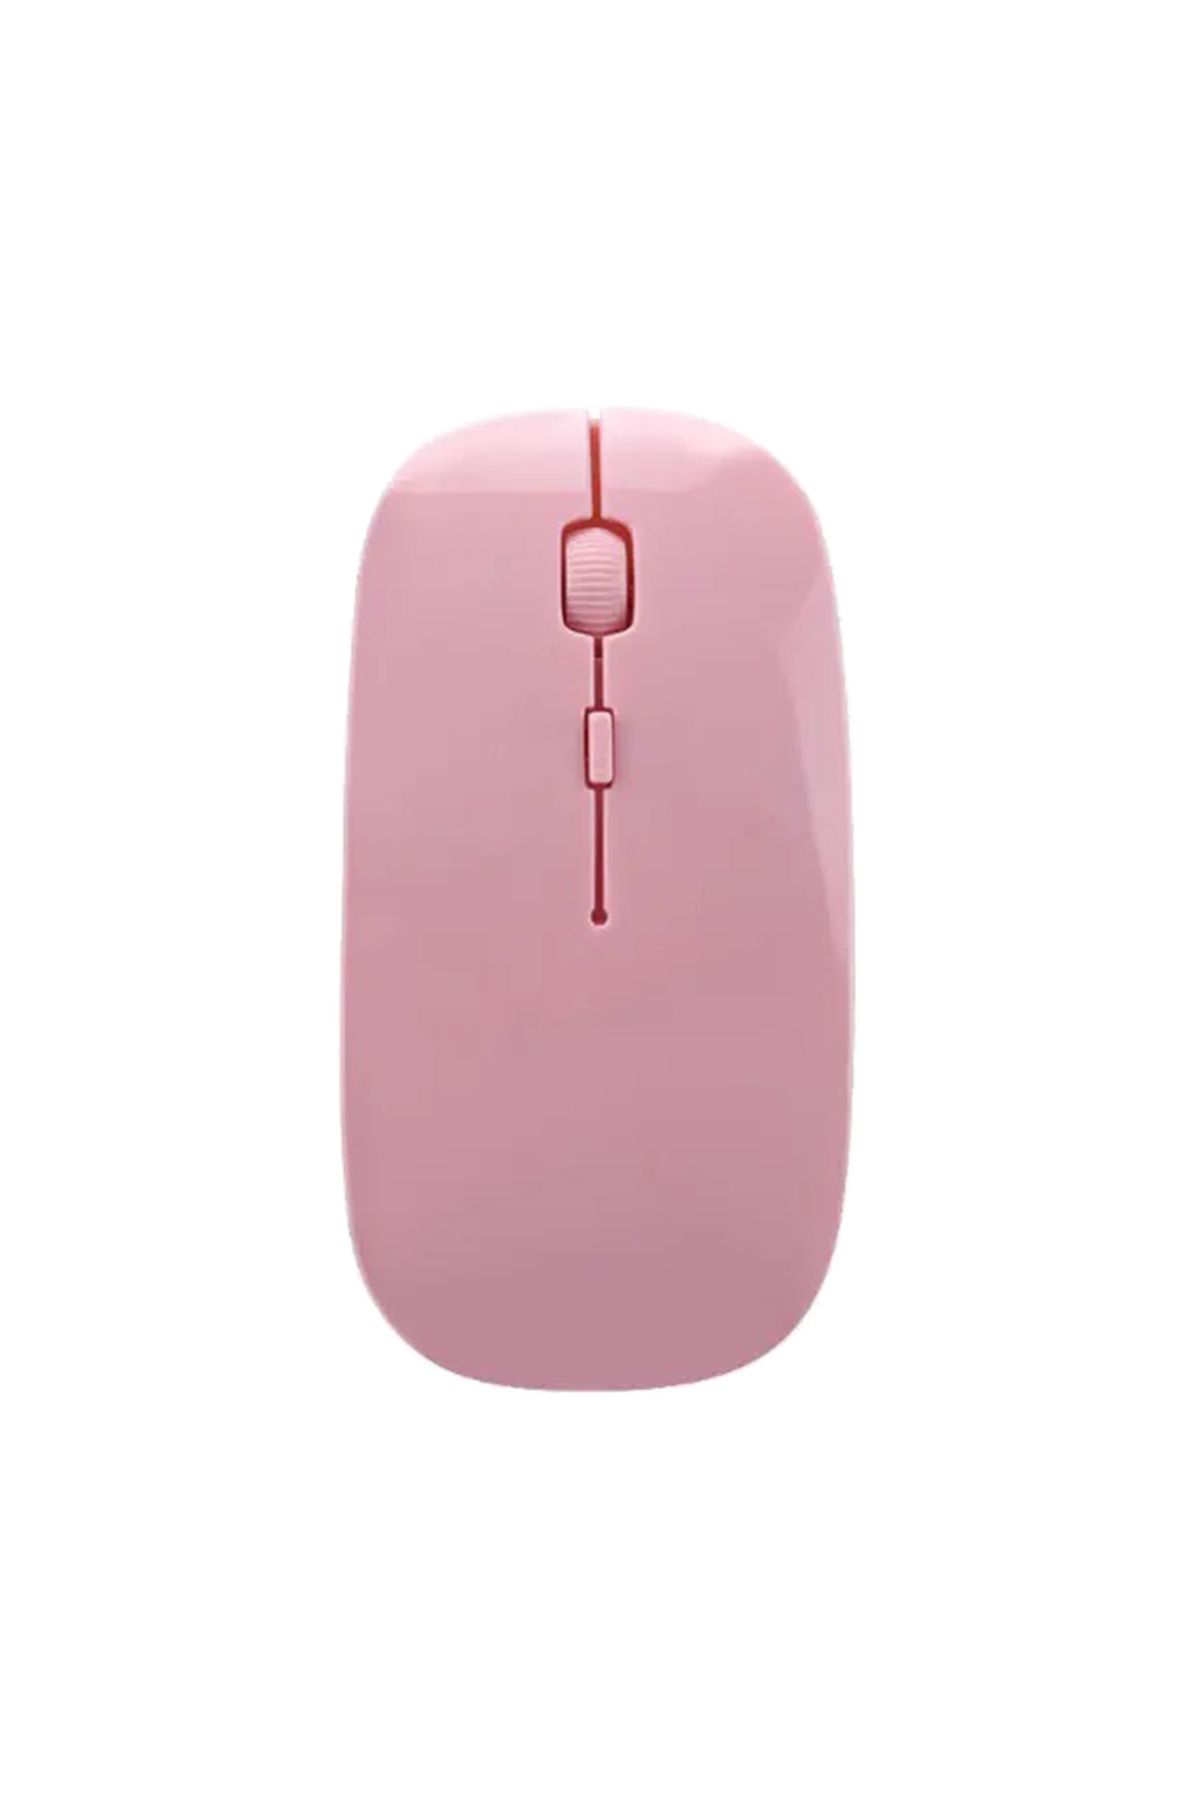 Rastpage Wireless 2.4Ghz Slim Kablosuz Mouse